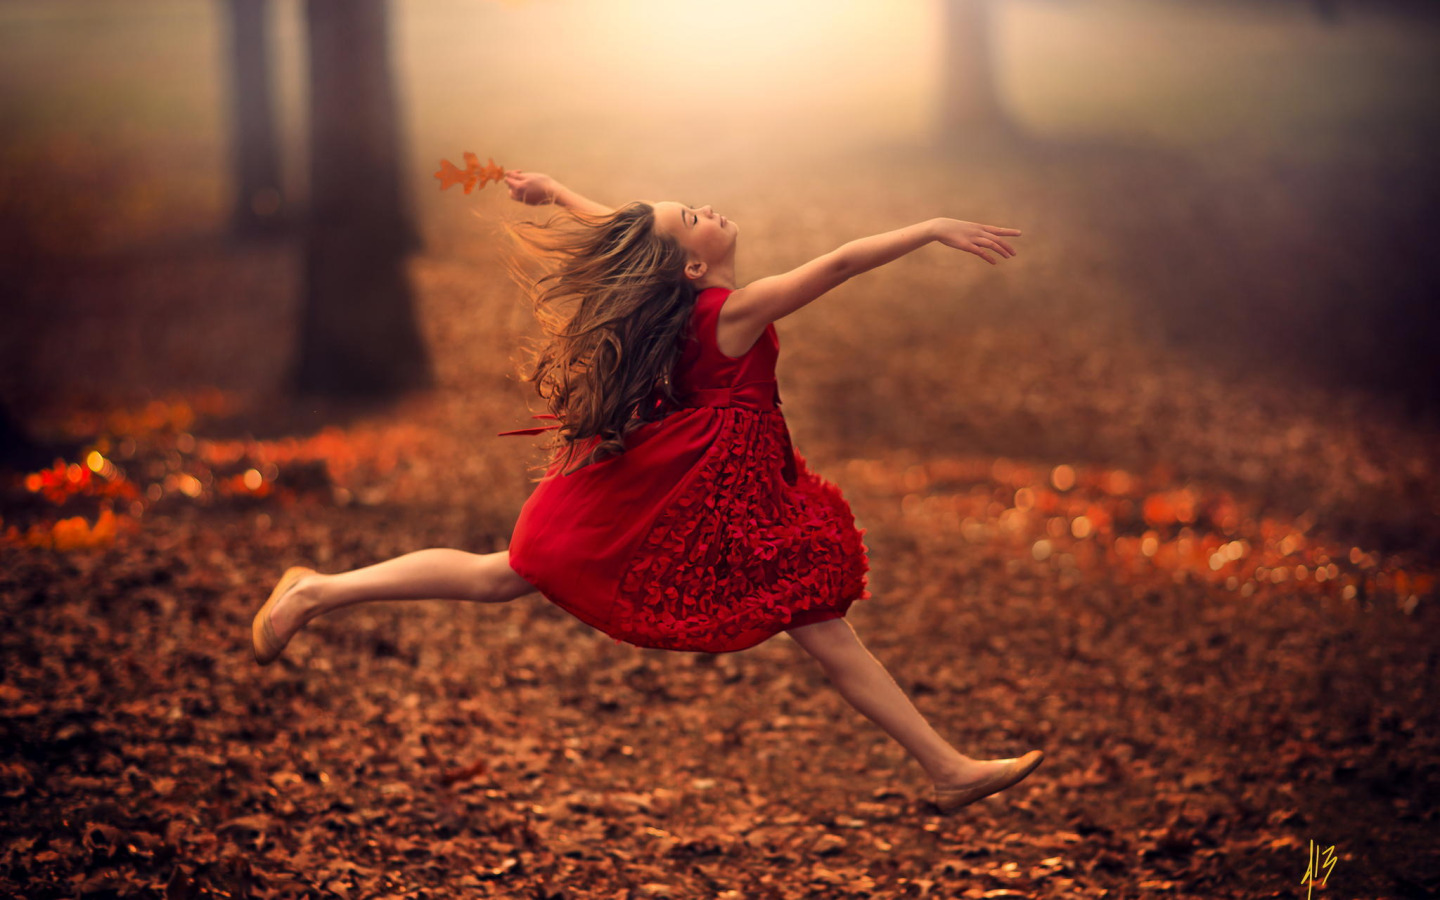 Расслабленный танец. Джейк Олсон (Jake Olson), США. Девушка танцует. Девушка бежит в платье. Девушка танцует осень.